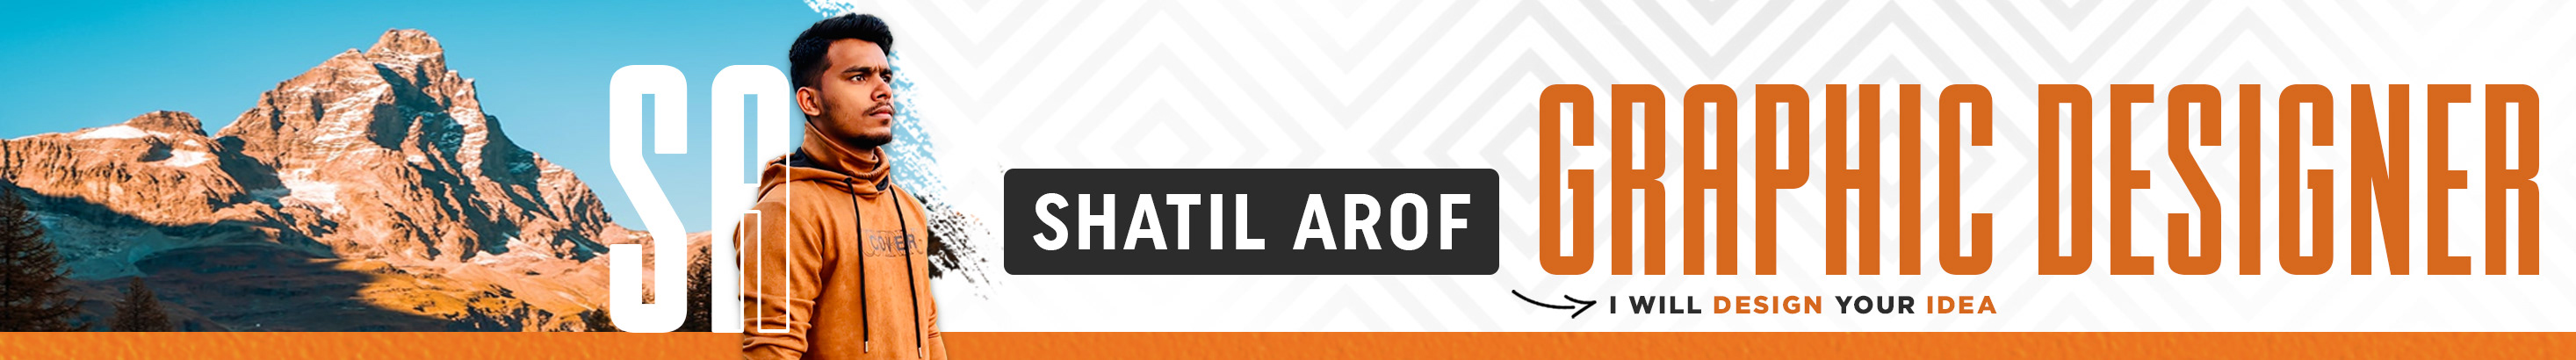 Shatil Arof's profile banner